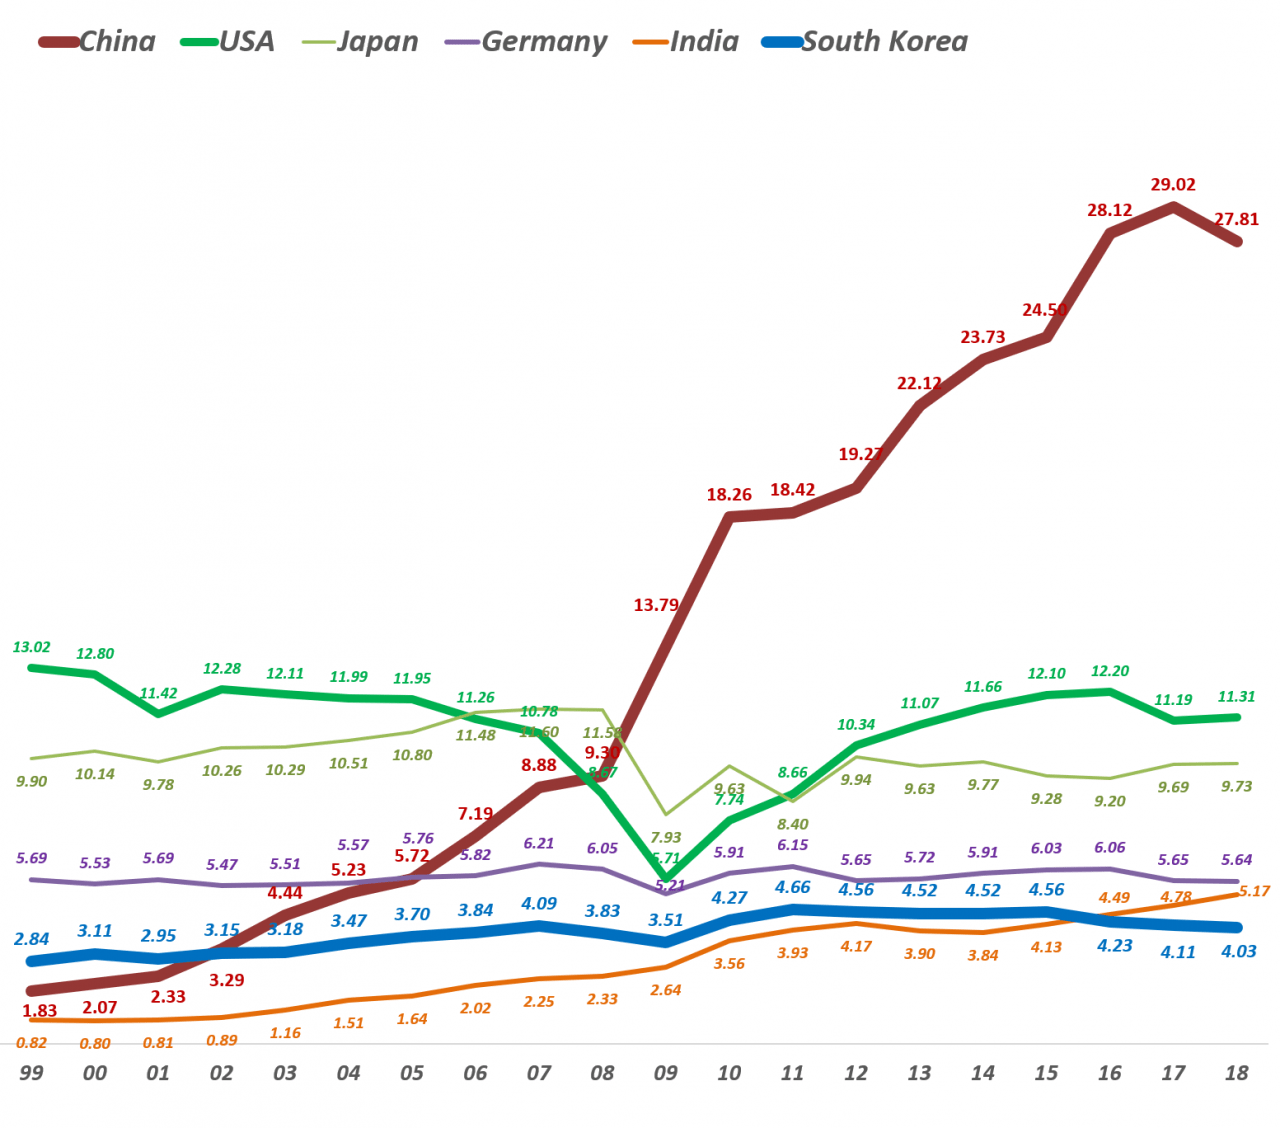 주요 국가별 자동차 생산량 추이(1999년 ~ 2018년) 그래프, Data Source - 1996 ~ 2017 - OICA & 2018 - 한국자동차공업협협, Graph by Happist